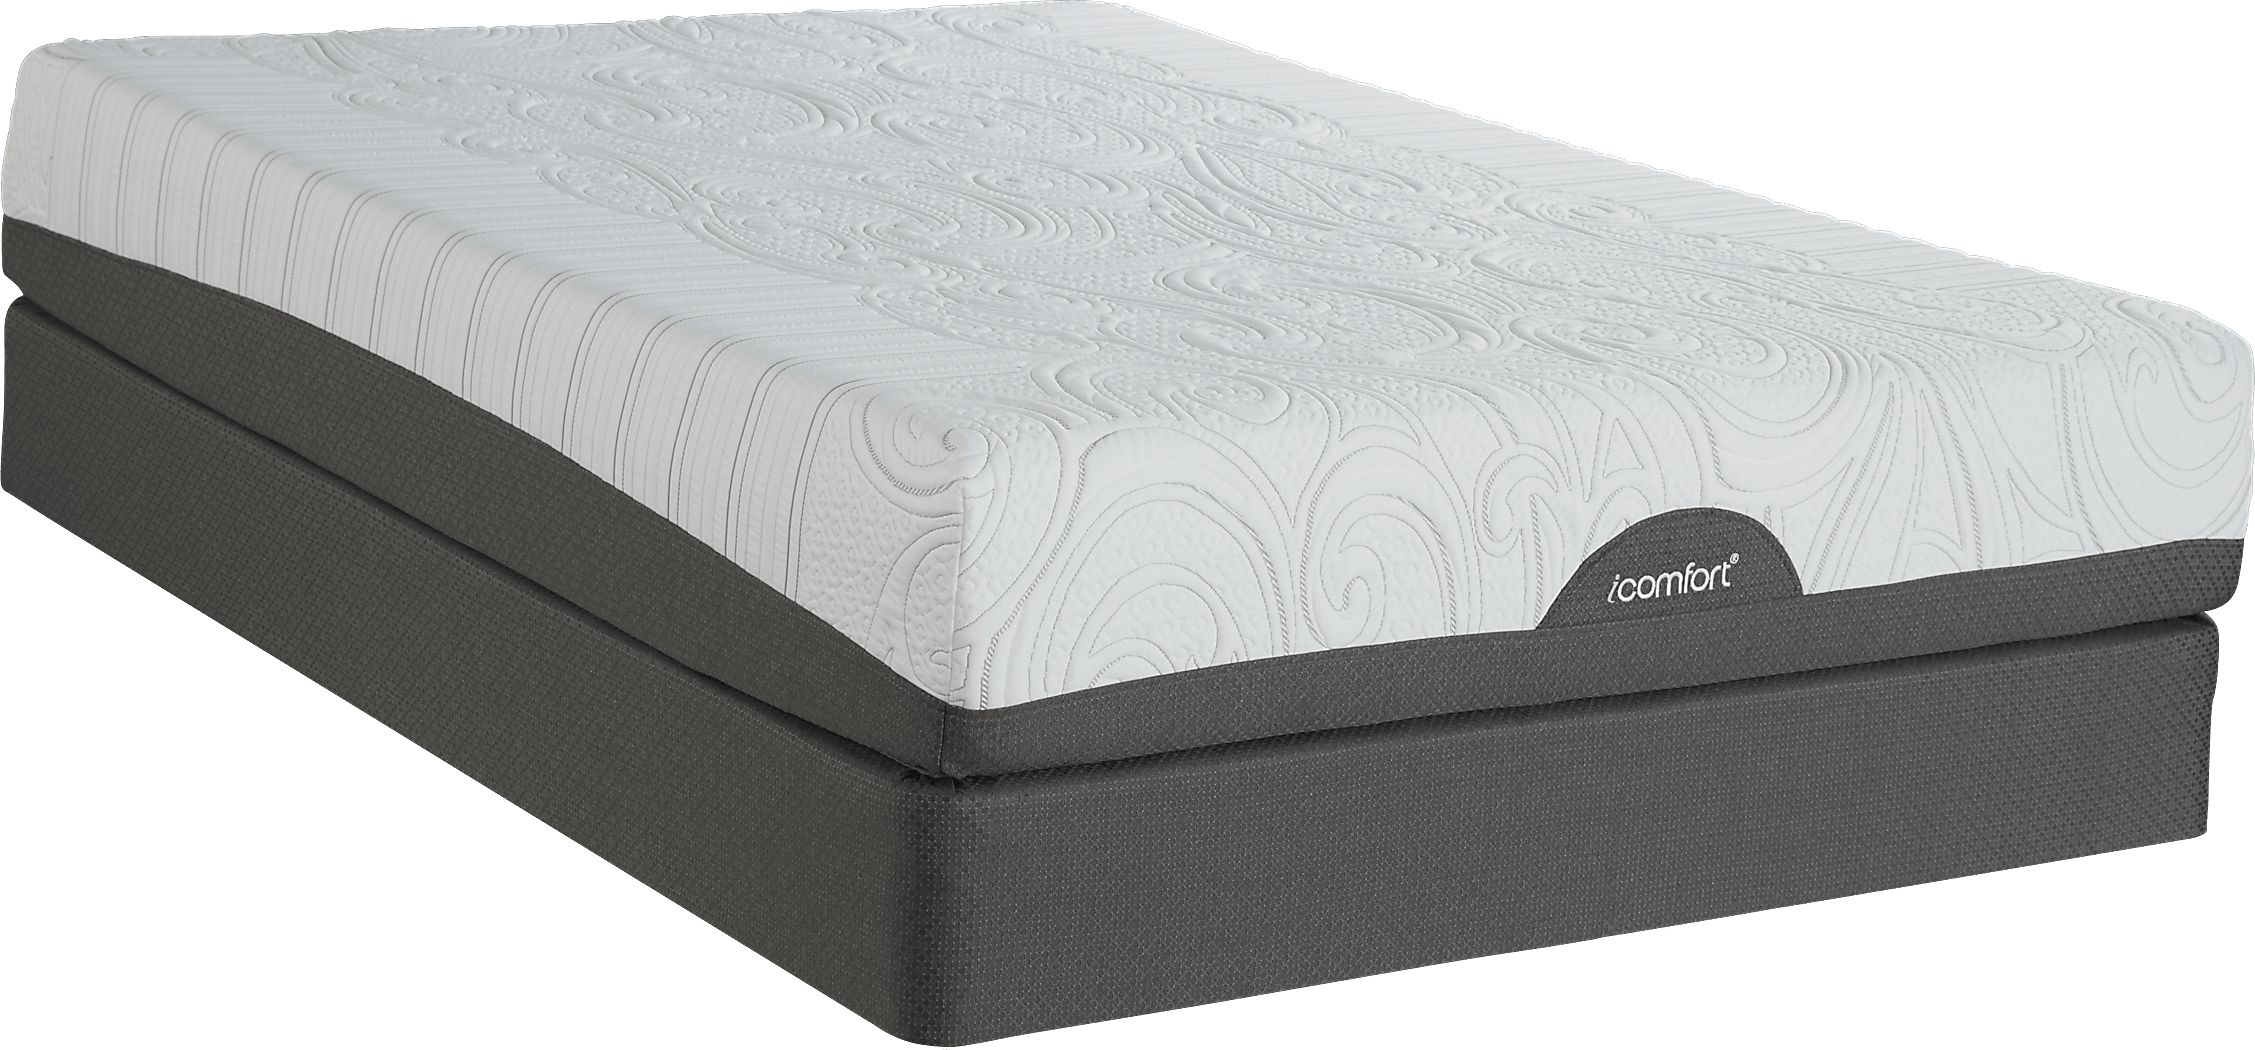 serta icomfort savant everfeel cushion firm mattress reviews